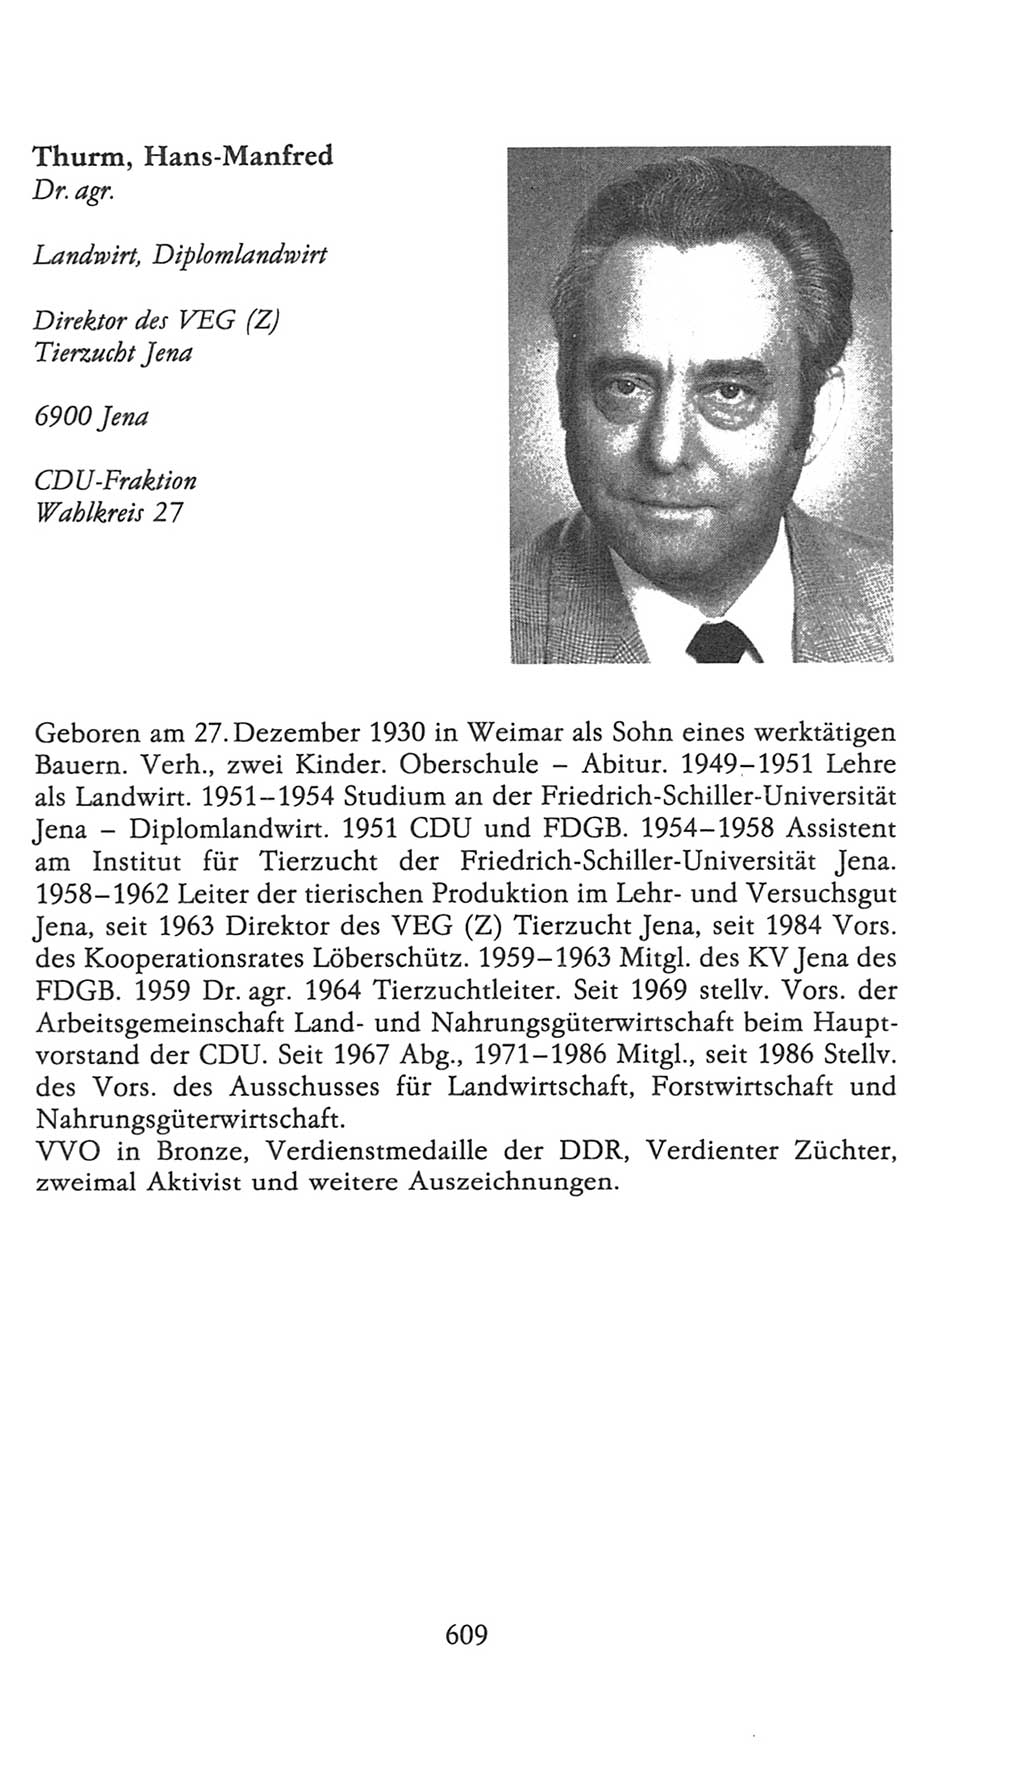 Volkskammer (VK) der Deutschen Demokratischen Republik (DDR), 9. Wahlperiode 1986-1990, Seite 609 (VK. DDR 9. WP. 1986-1990, S. 609)